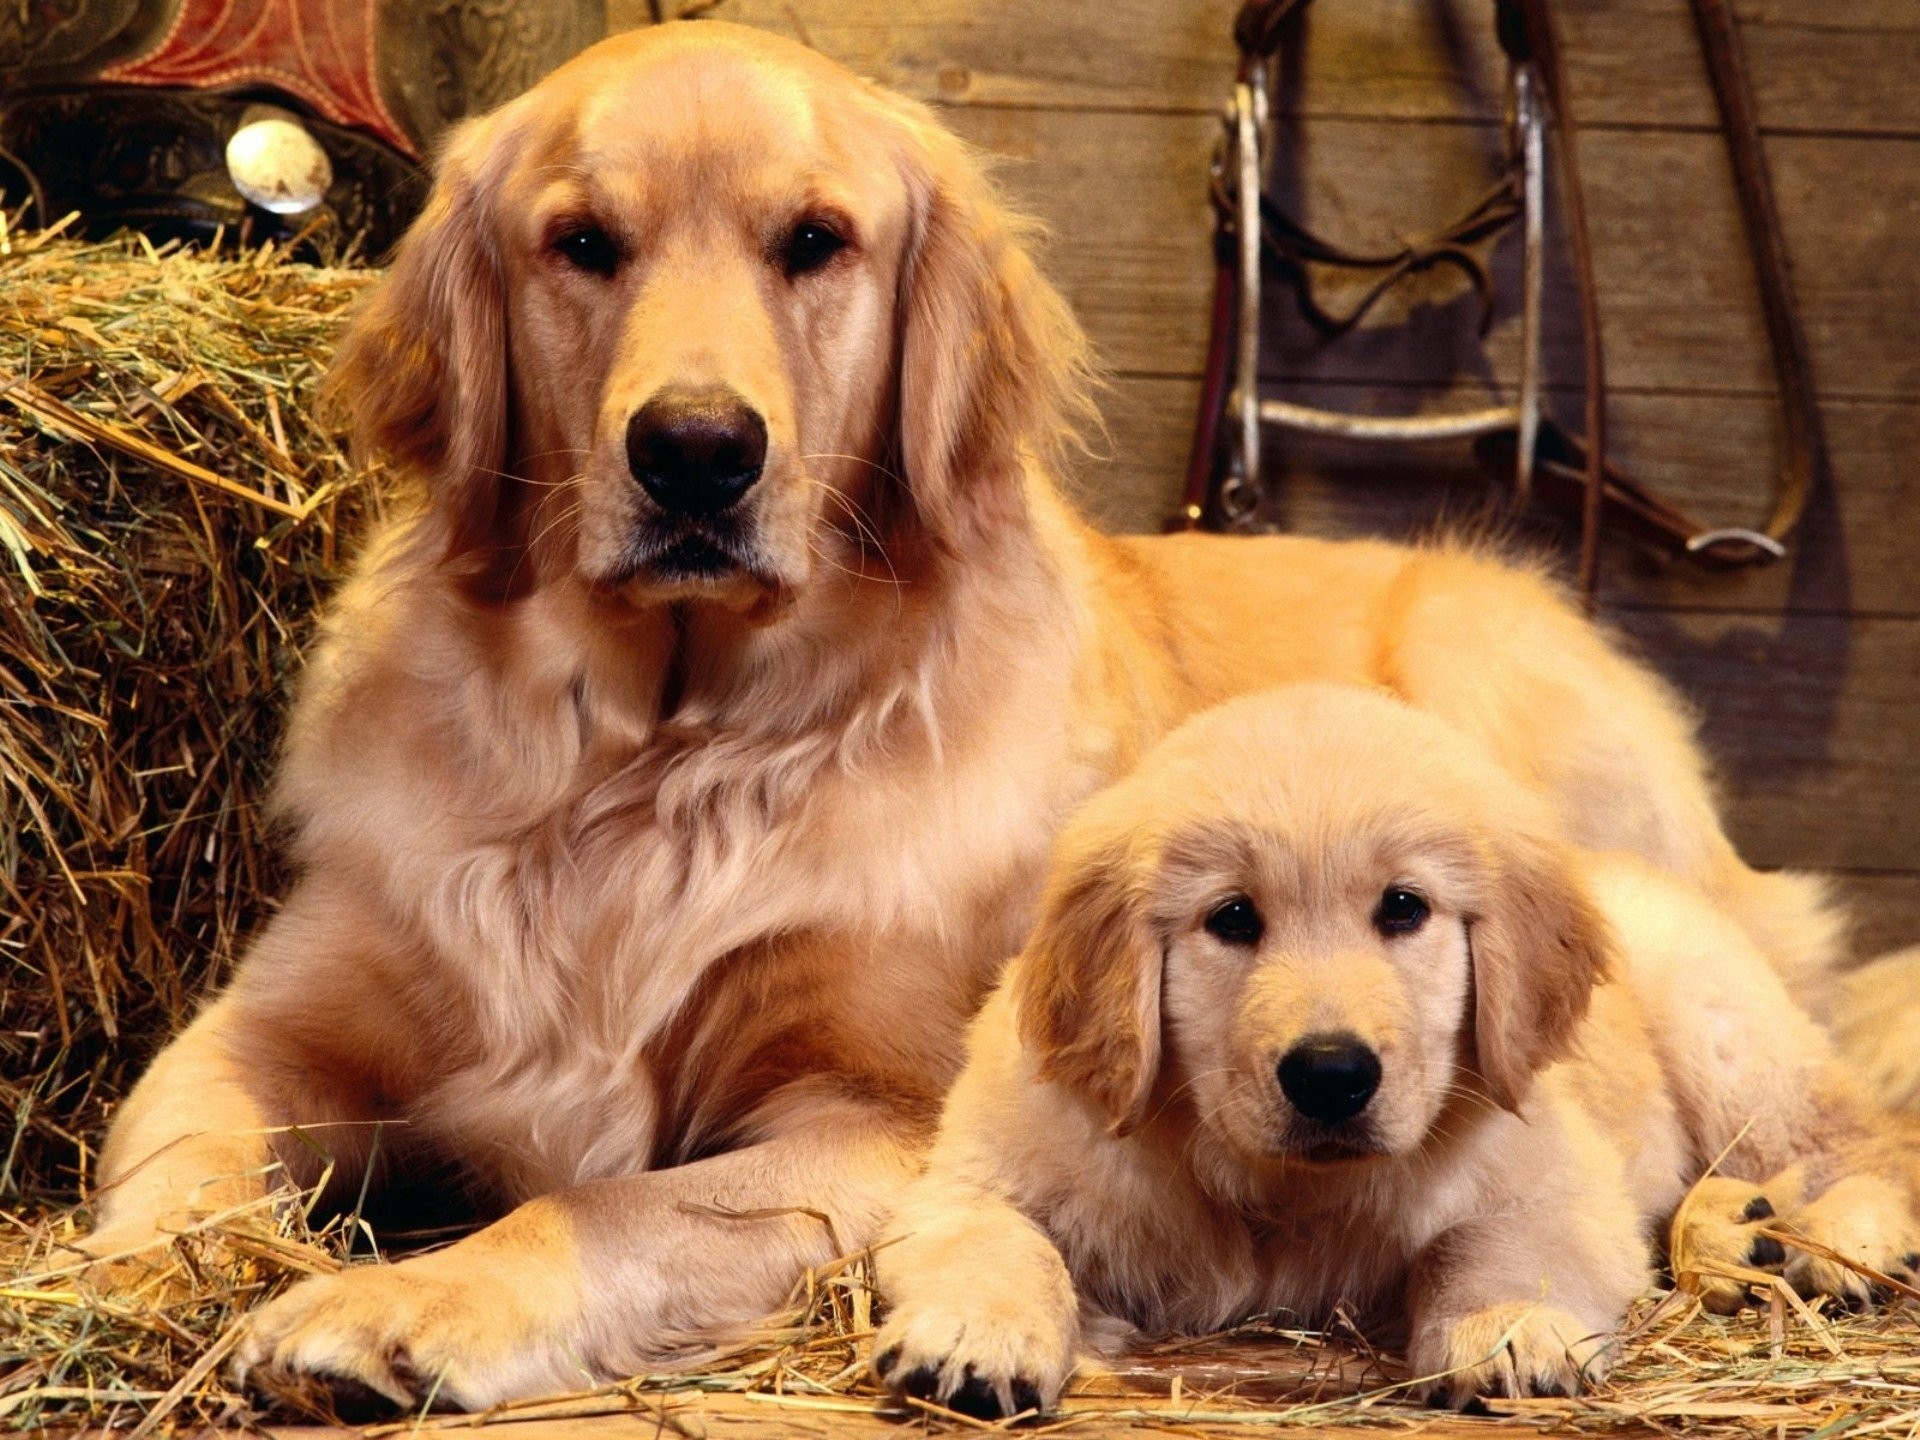 Cute Golden Retriever Puppies Wallpaper 56 Images